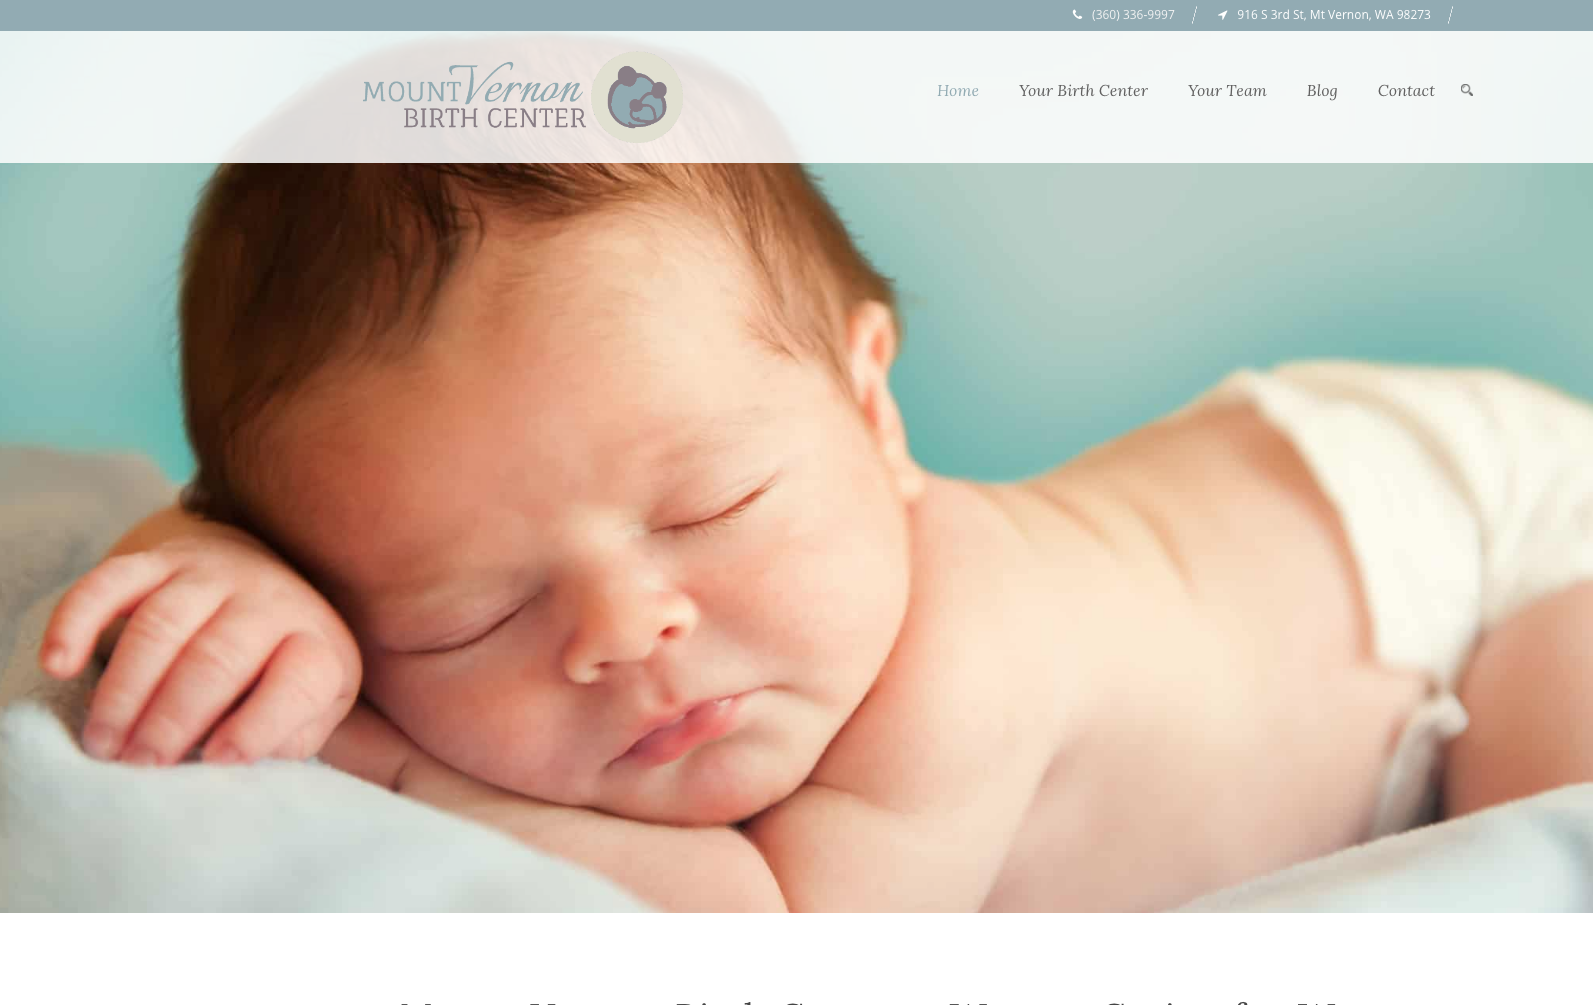 Mount Vernon Birth Center website homepage